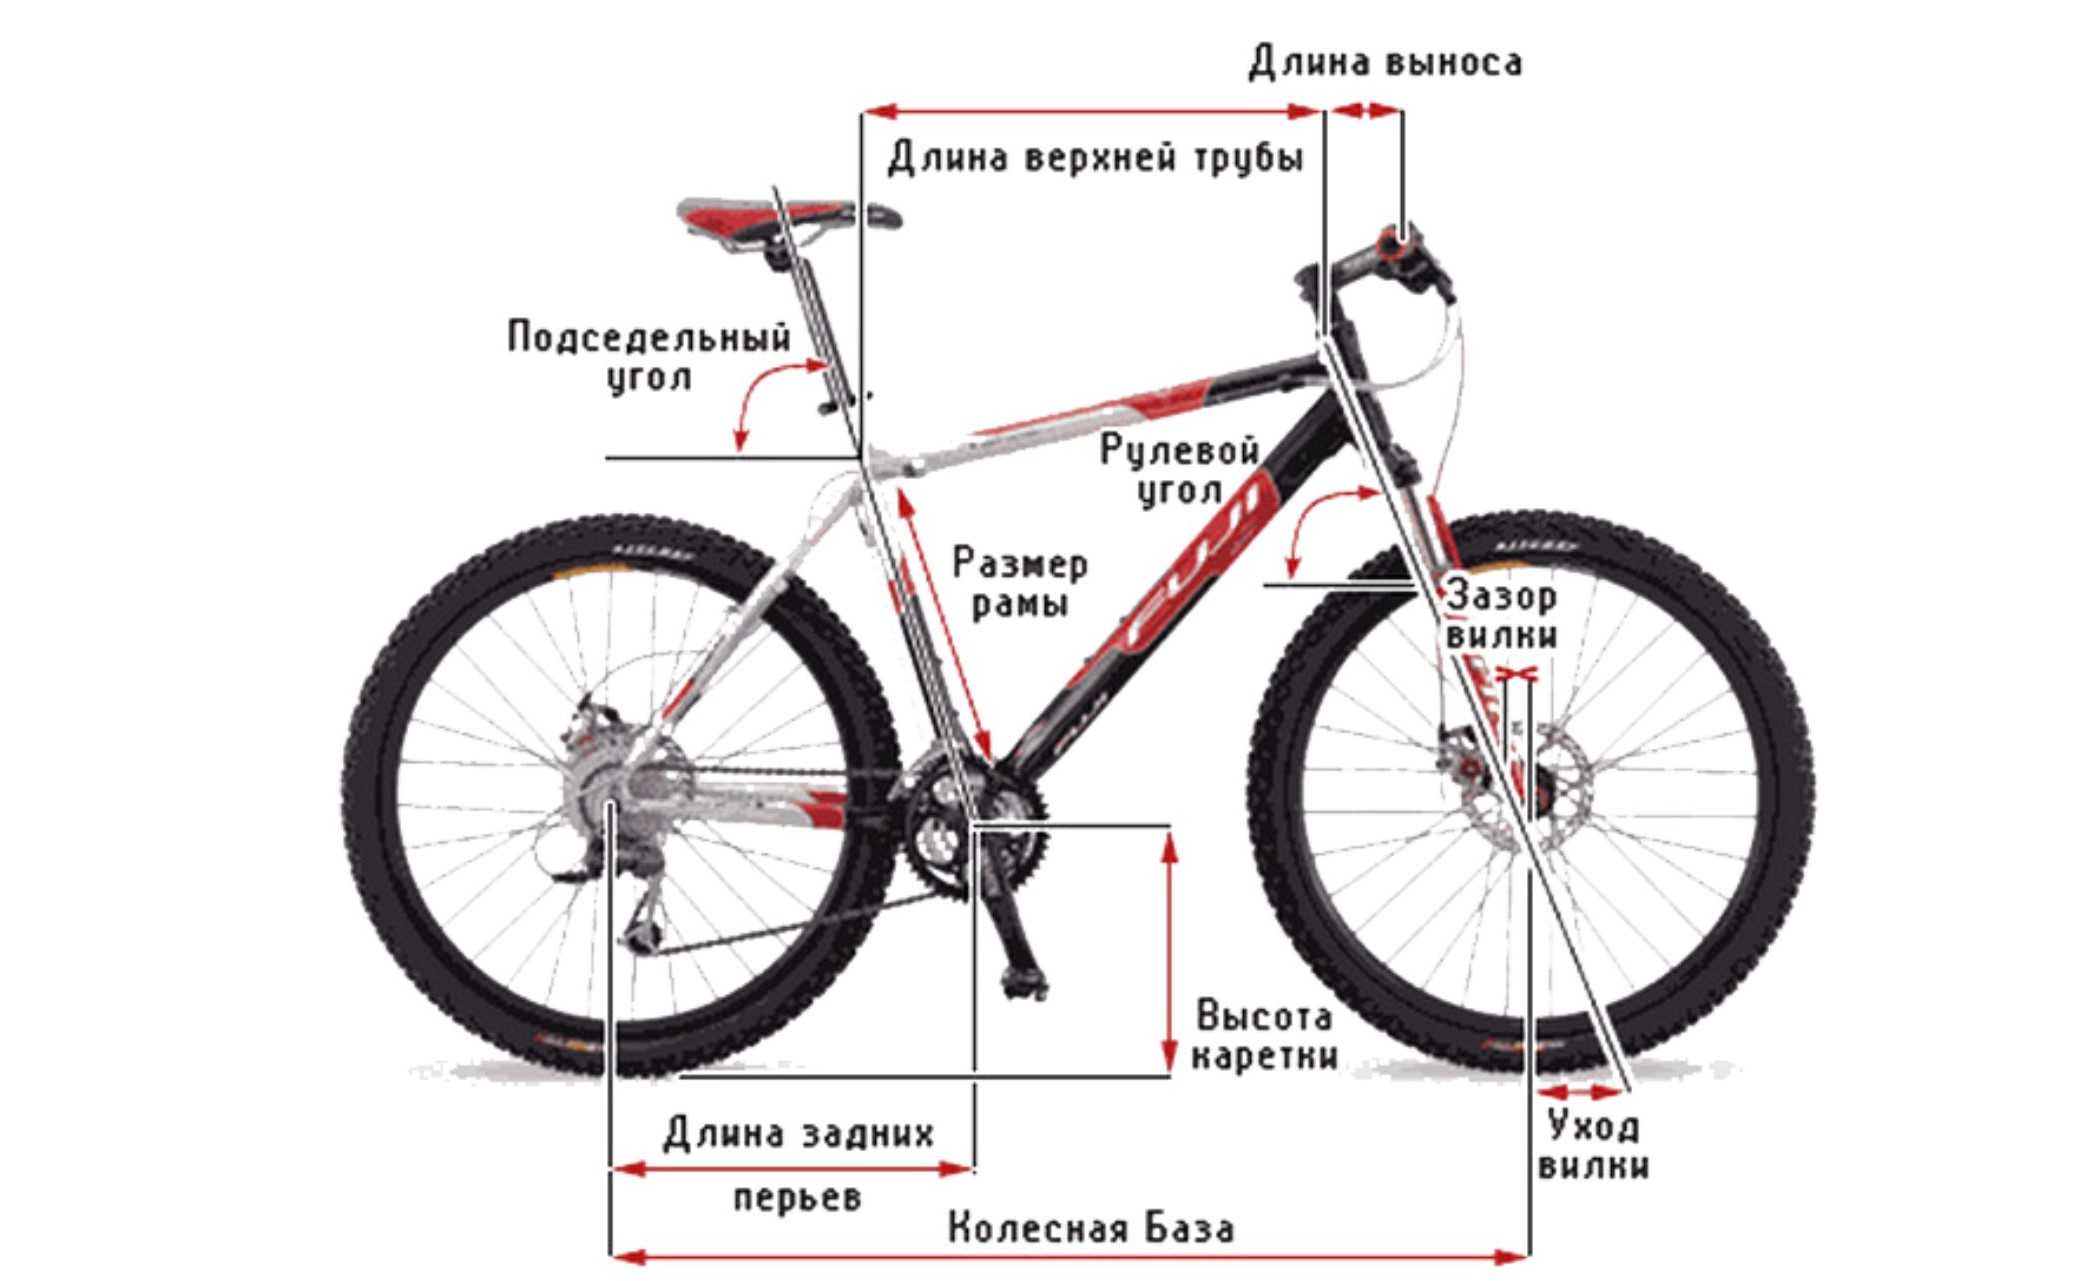 Регулировка рамы по высоте. Размер рамы велосипеда с диаметром колеса 27.5. Размер рамы - 16 " размер колес - 26 ". Длина велосипеда 27.5 с колёсами. Размер рамы 17,5, колеса 26.